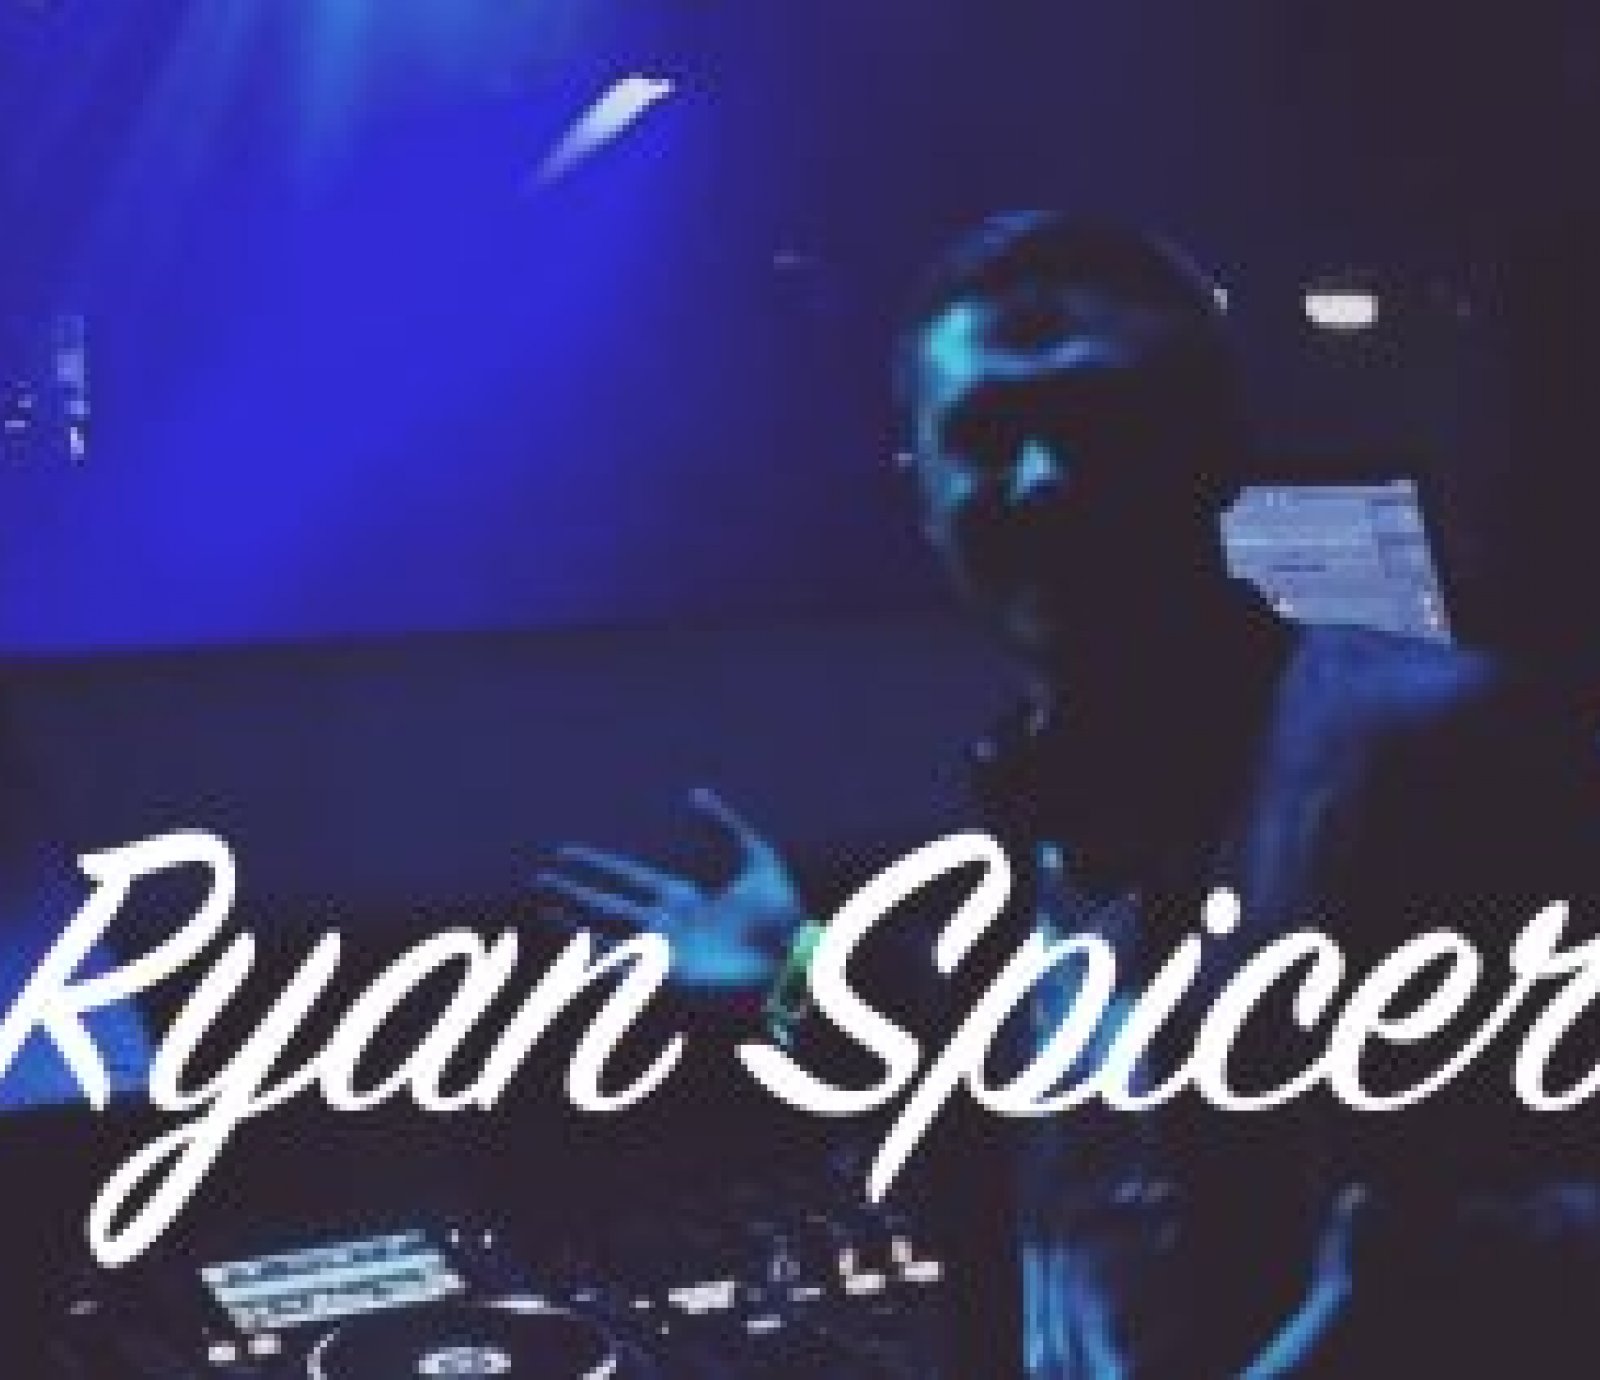 Ryan Spicer